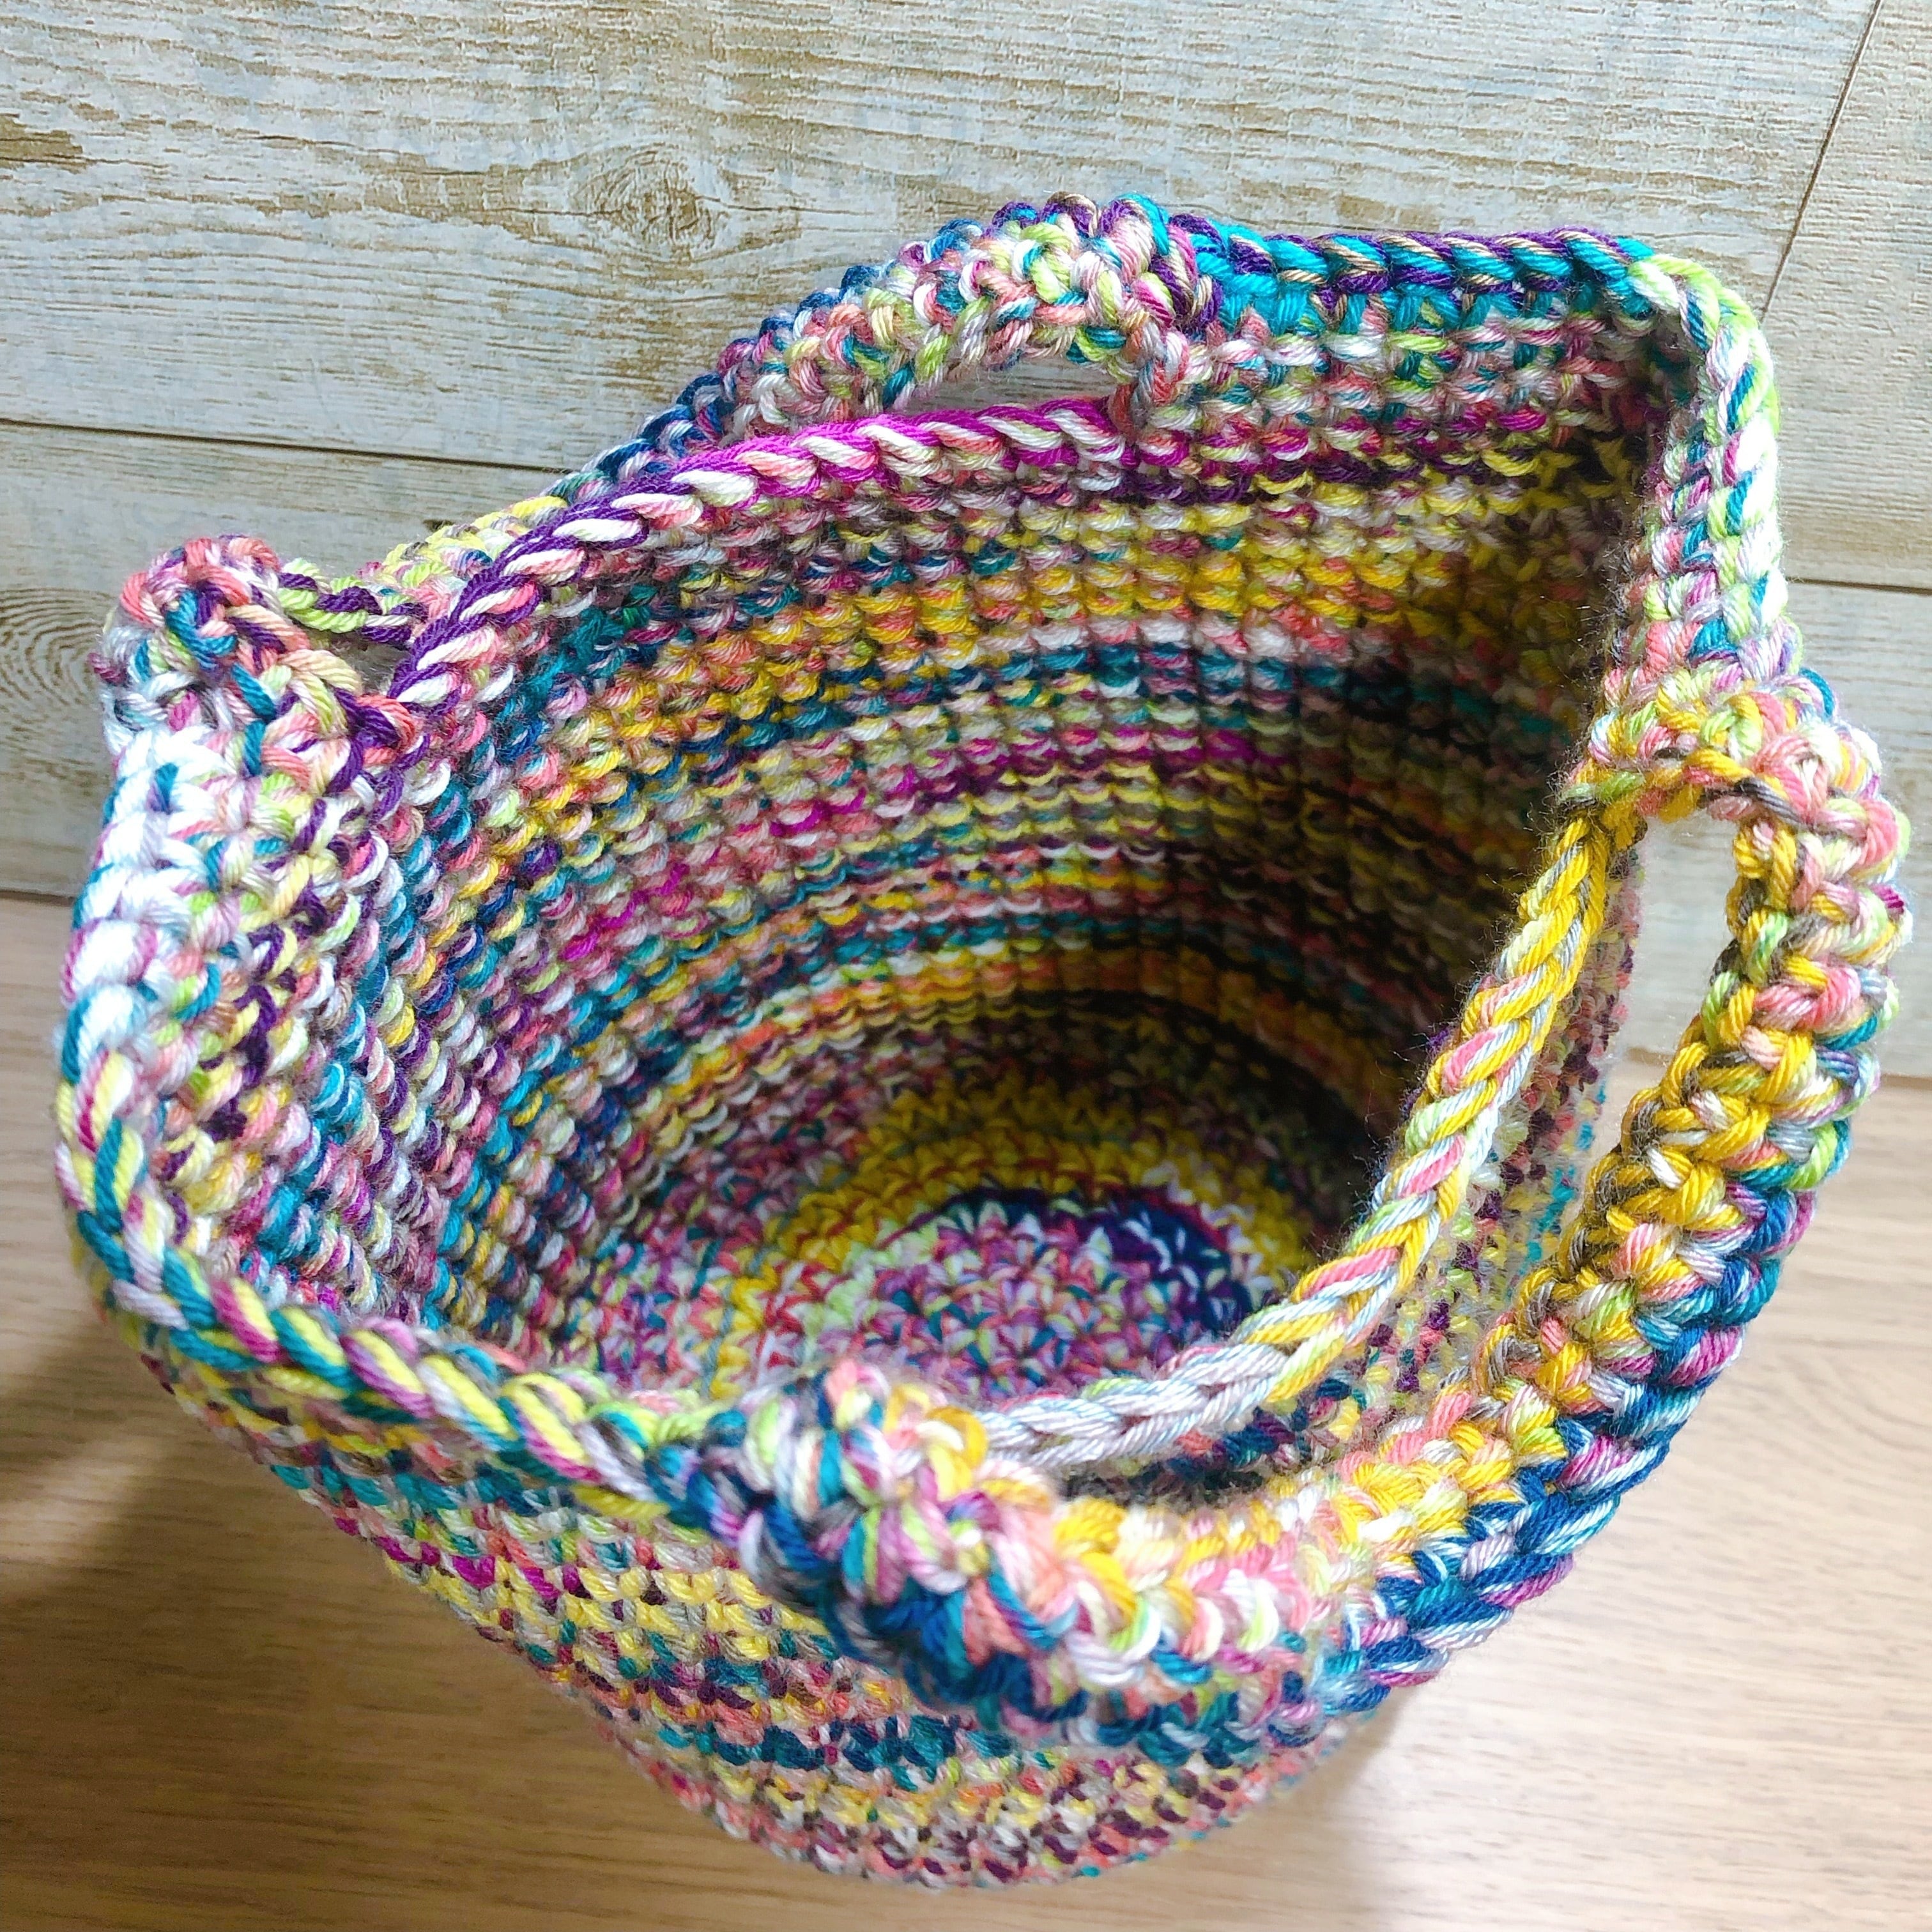 Scrap Yarn Basket Free Crochet Pattern